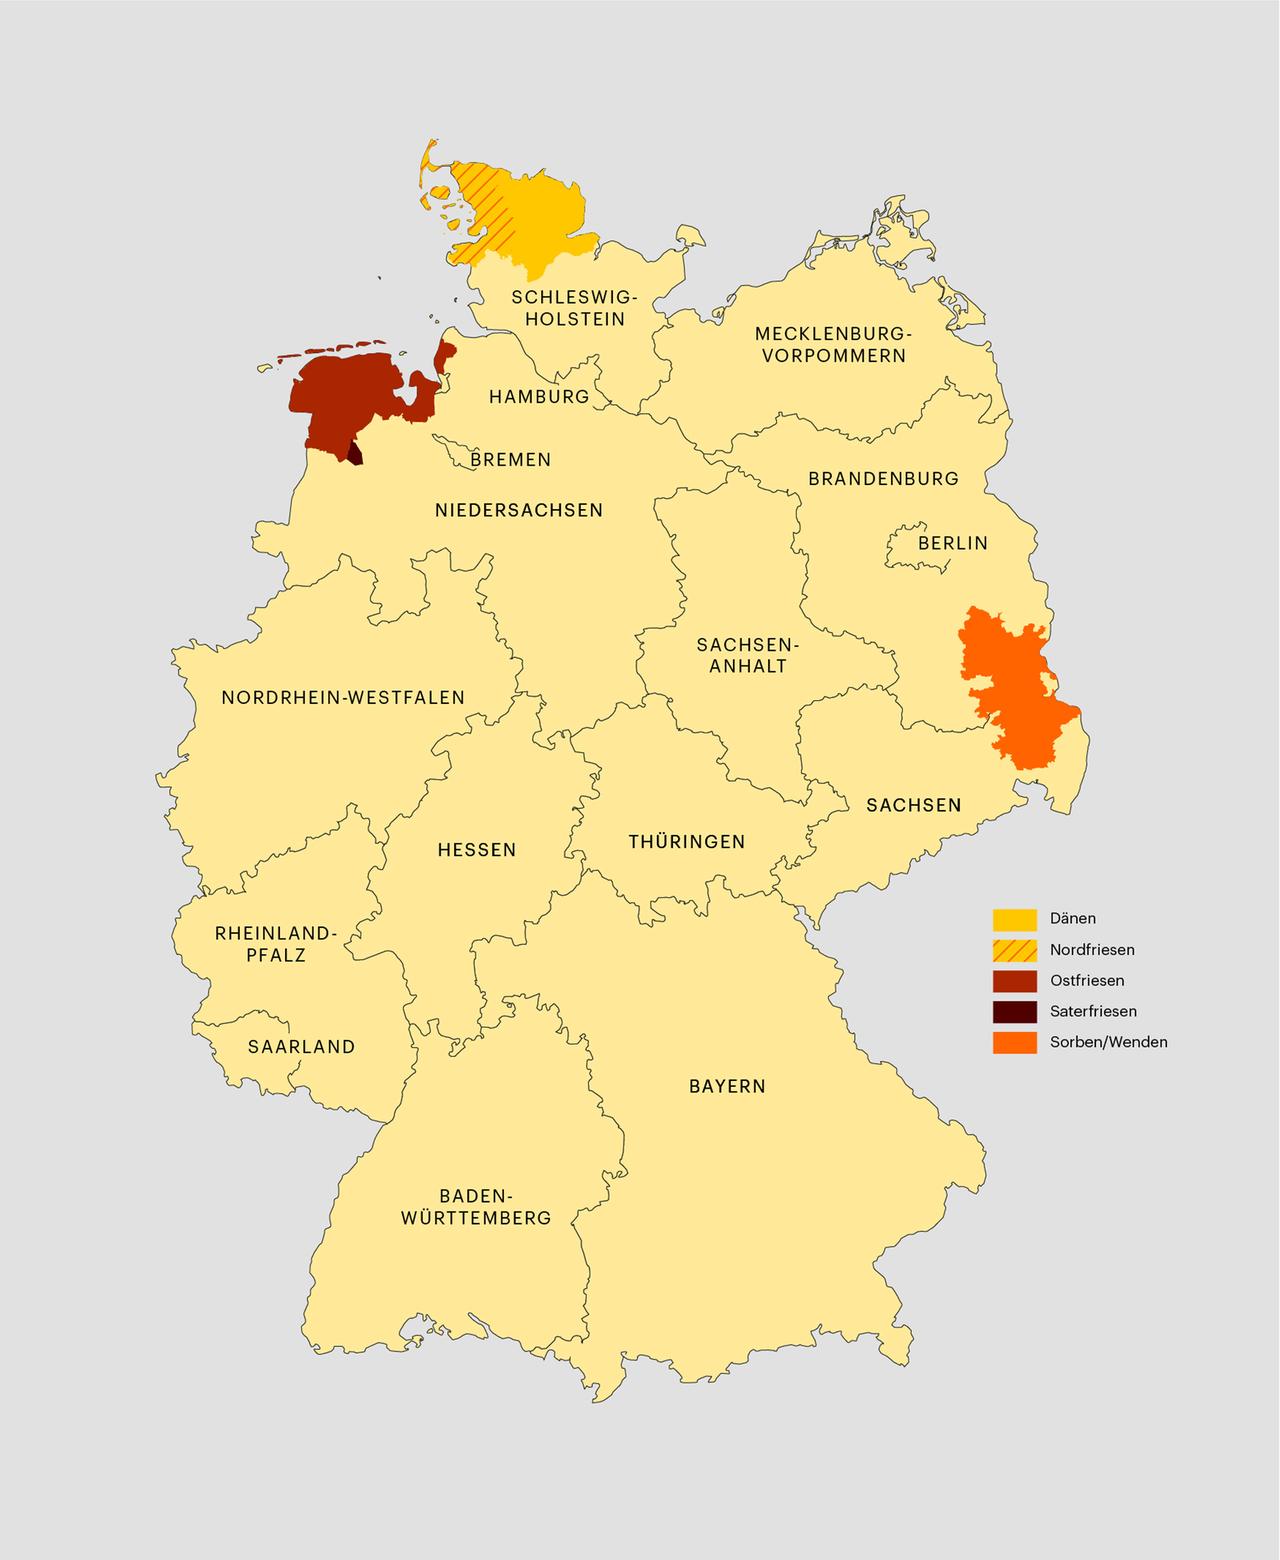 Die Karte zeigt Deutschland und markiert an verschiedenen Stellen die nationalen Minderheiten in Deutschland: die Sorben und Wenden in Brandenburg, die Dänen und Nordfriesen in Schleswig-Holstein, die Ostfriesen und Saterfriesen in Niedersachsen.